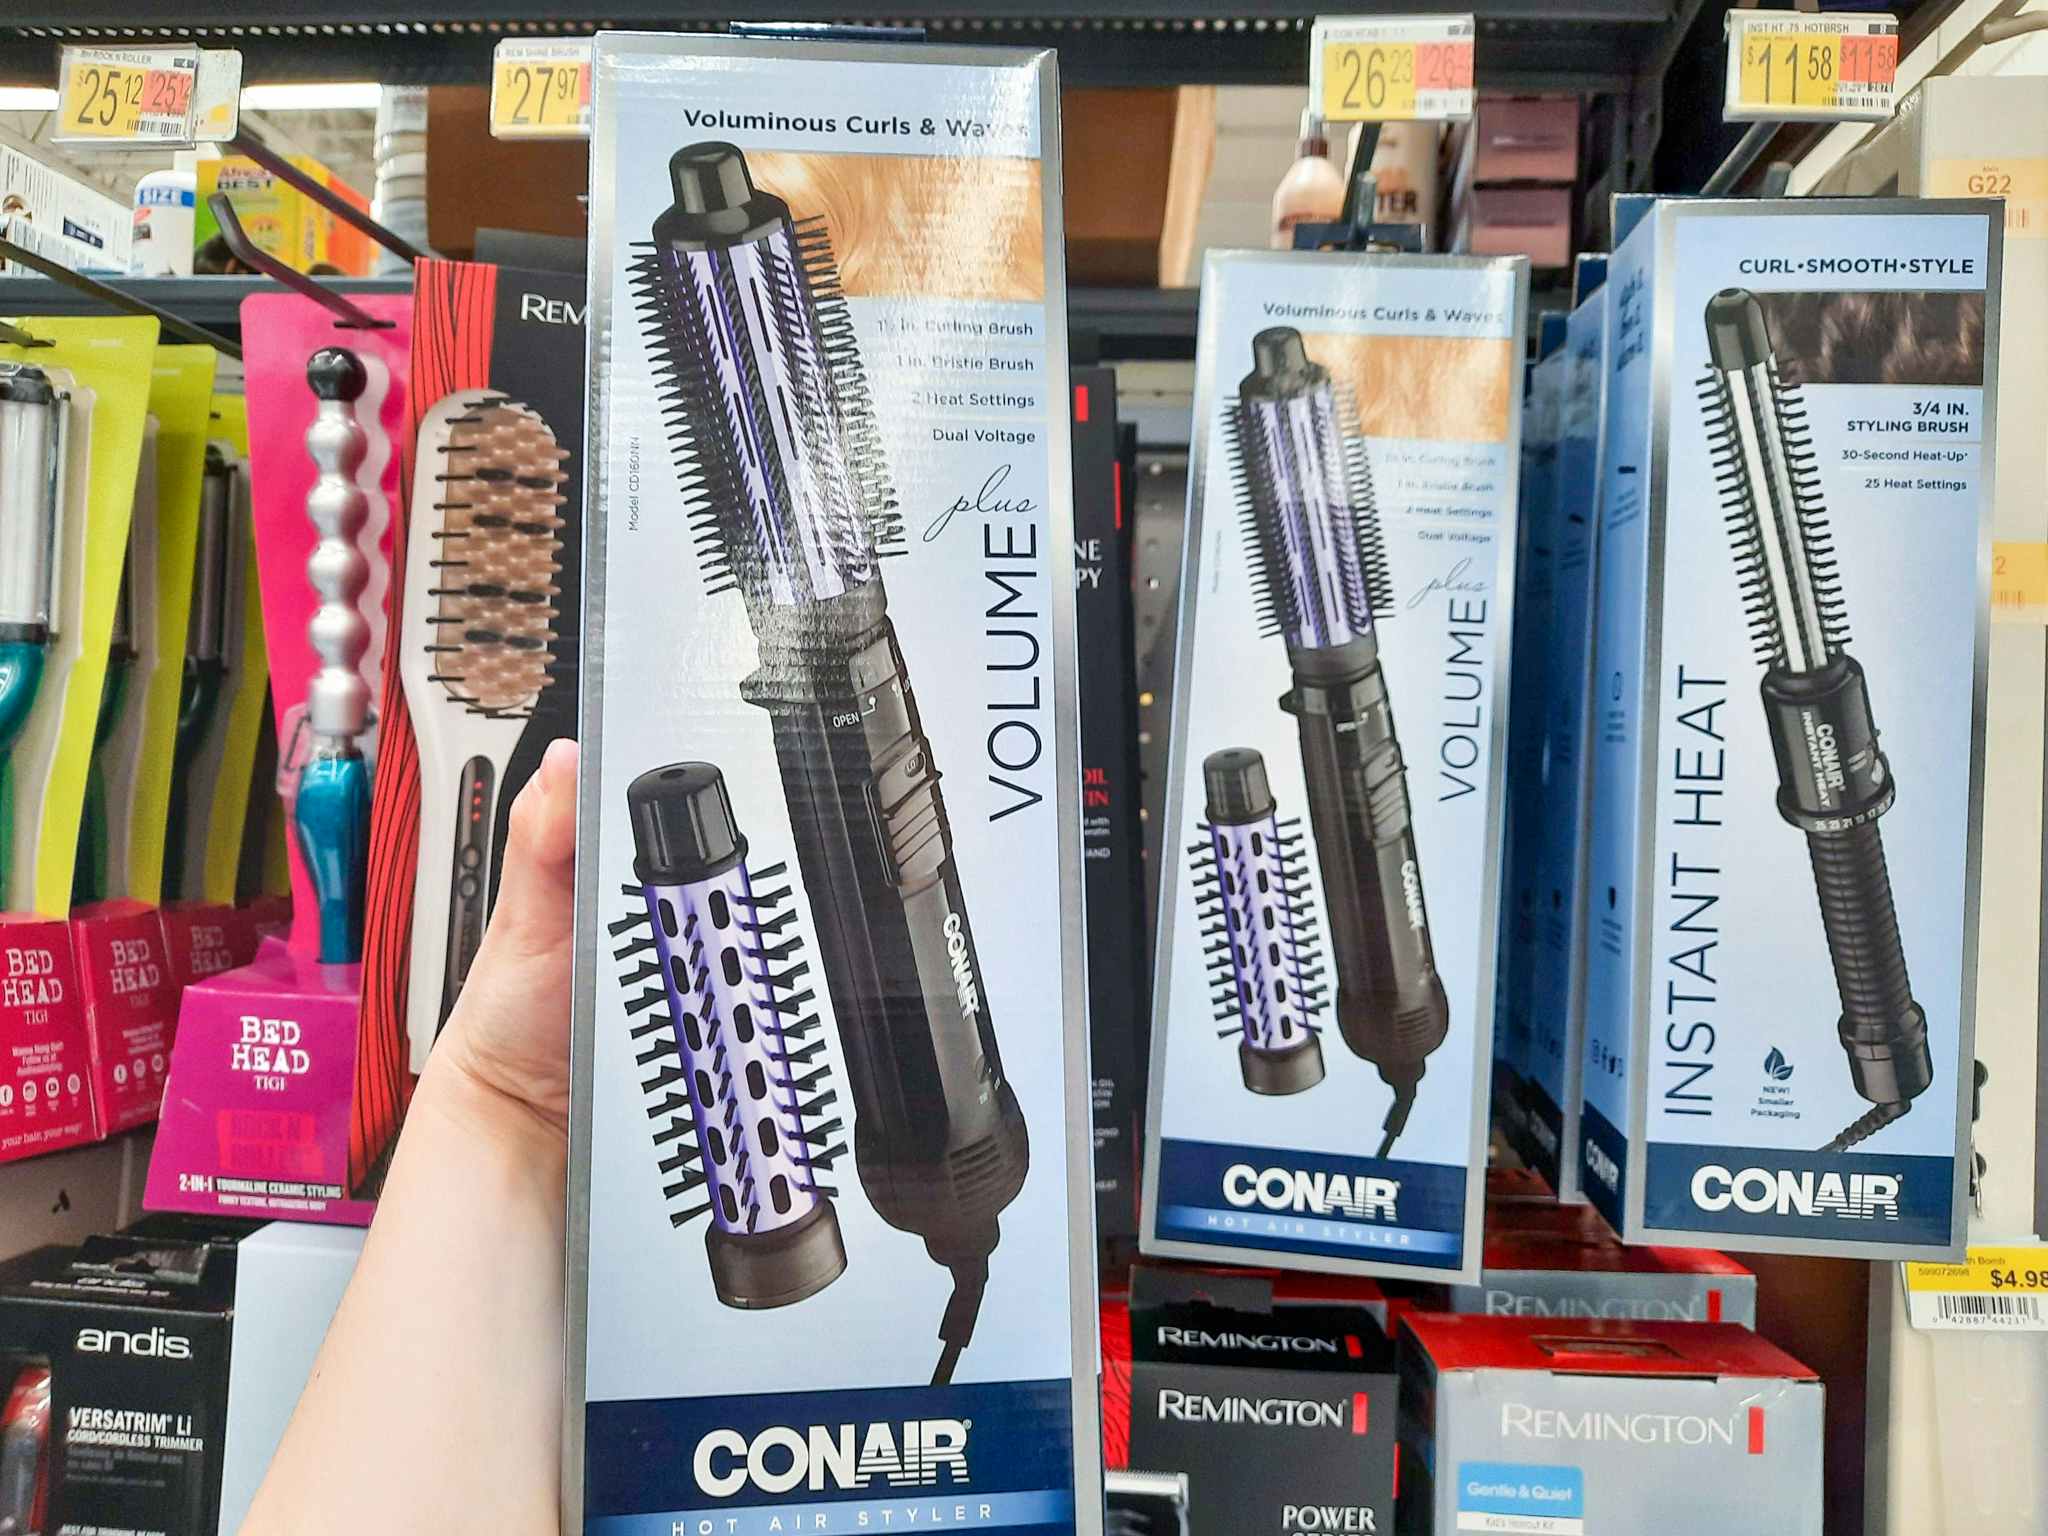 Conair Volume Series Curling Brush at Walmart